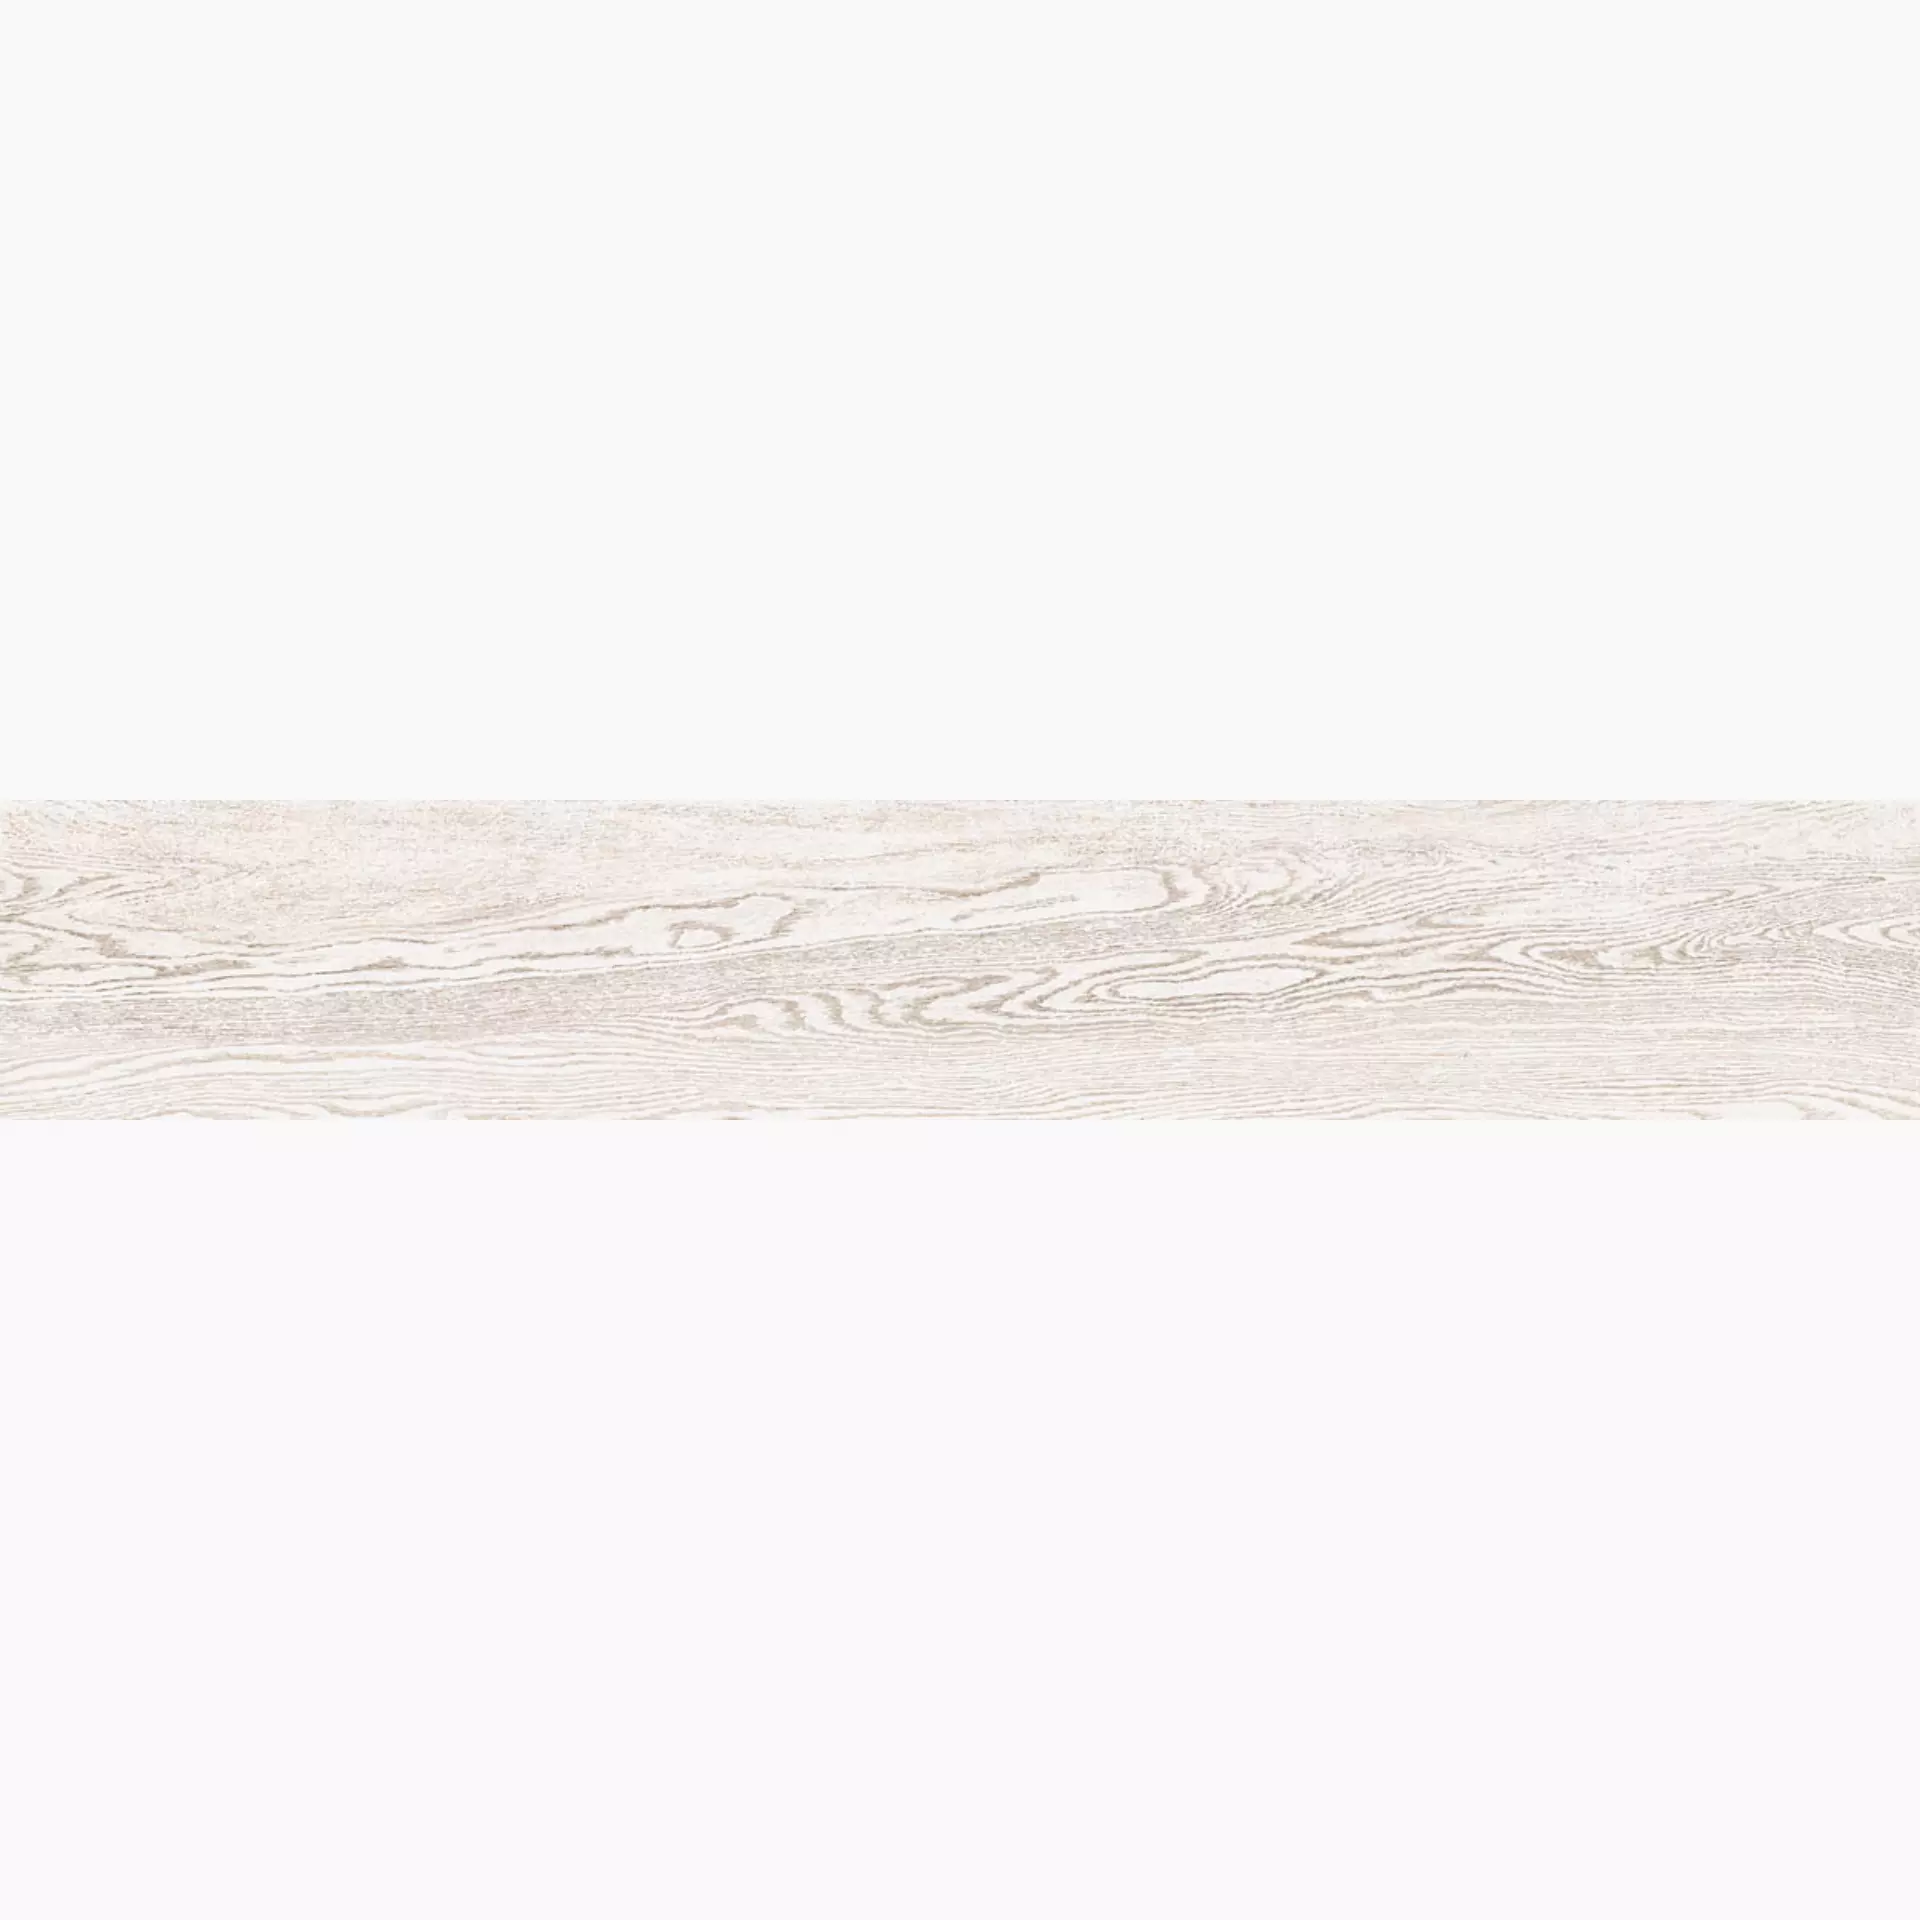 La Faenza Legno White Natural Slate Cut Matt 168442 30x180cm rectified 10mm - LEGNO 3018W RM